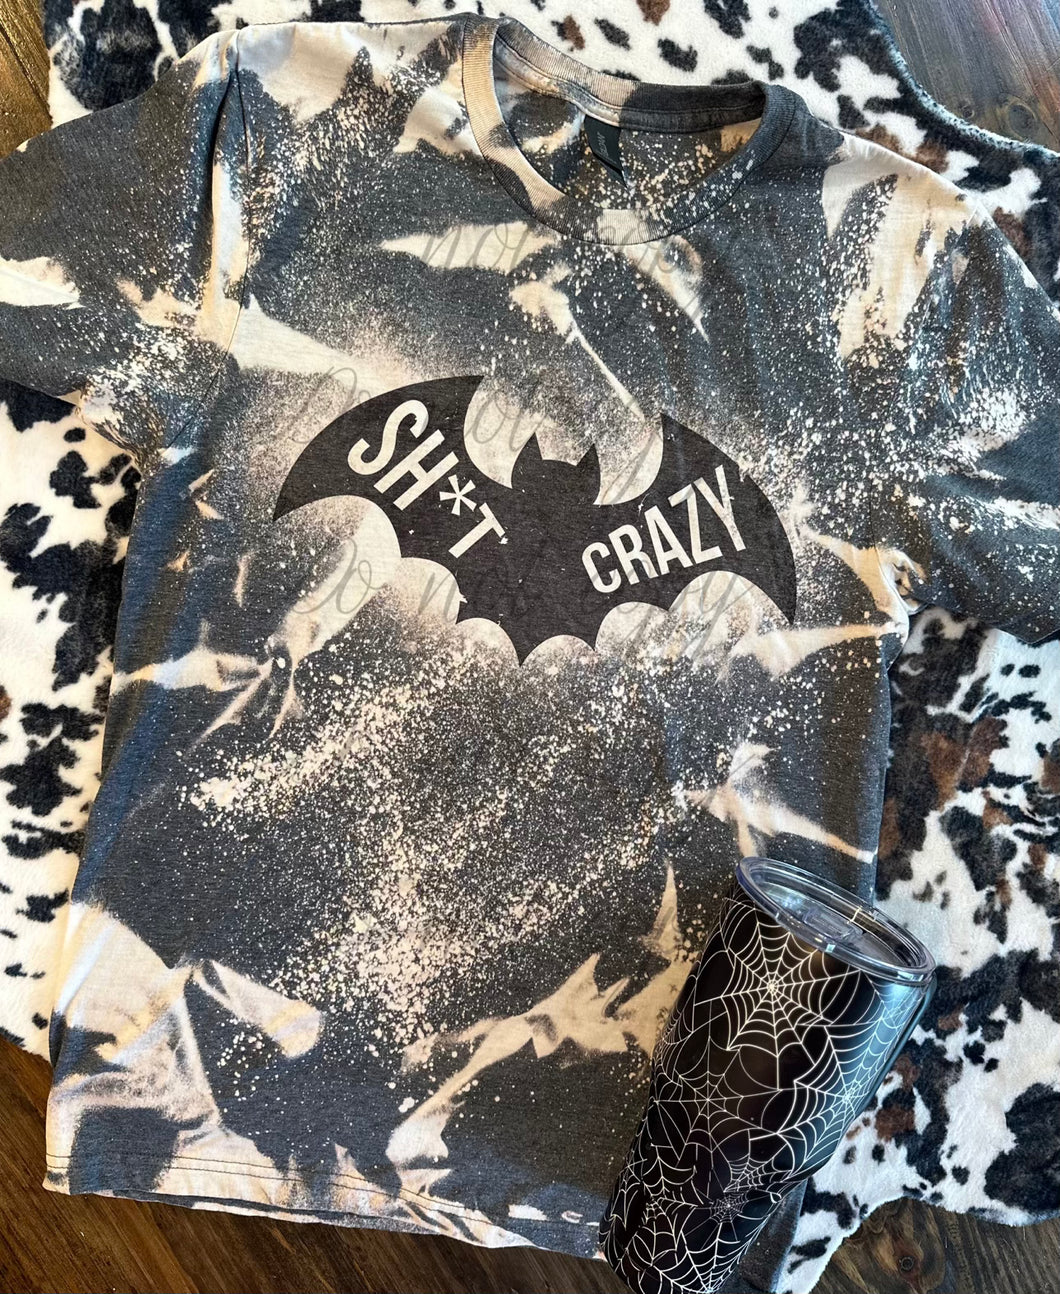 Bat sh*t crazy bleached graphic tee - Mavictoria Designs Hot Press Express